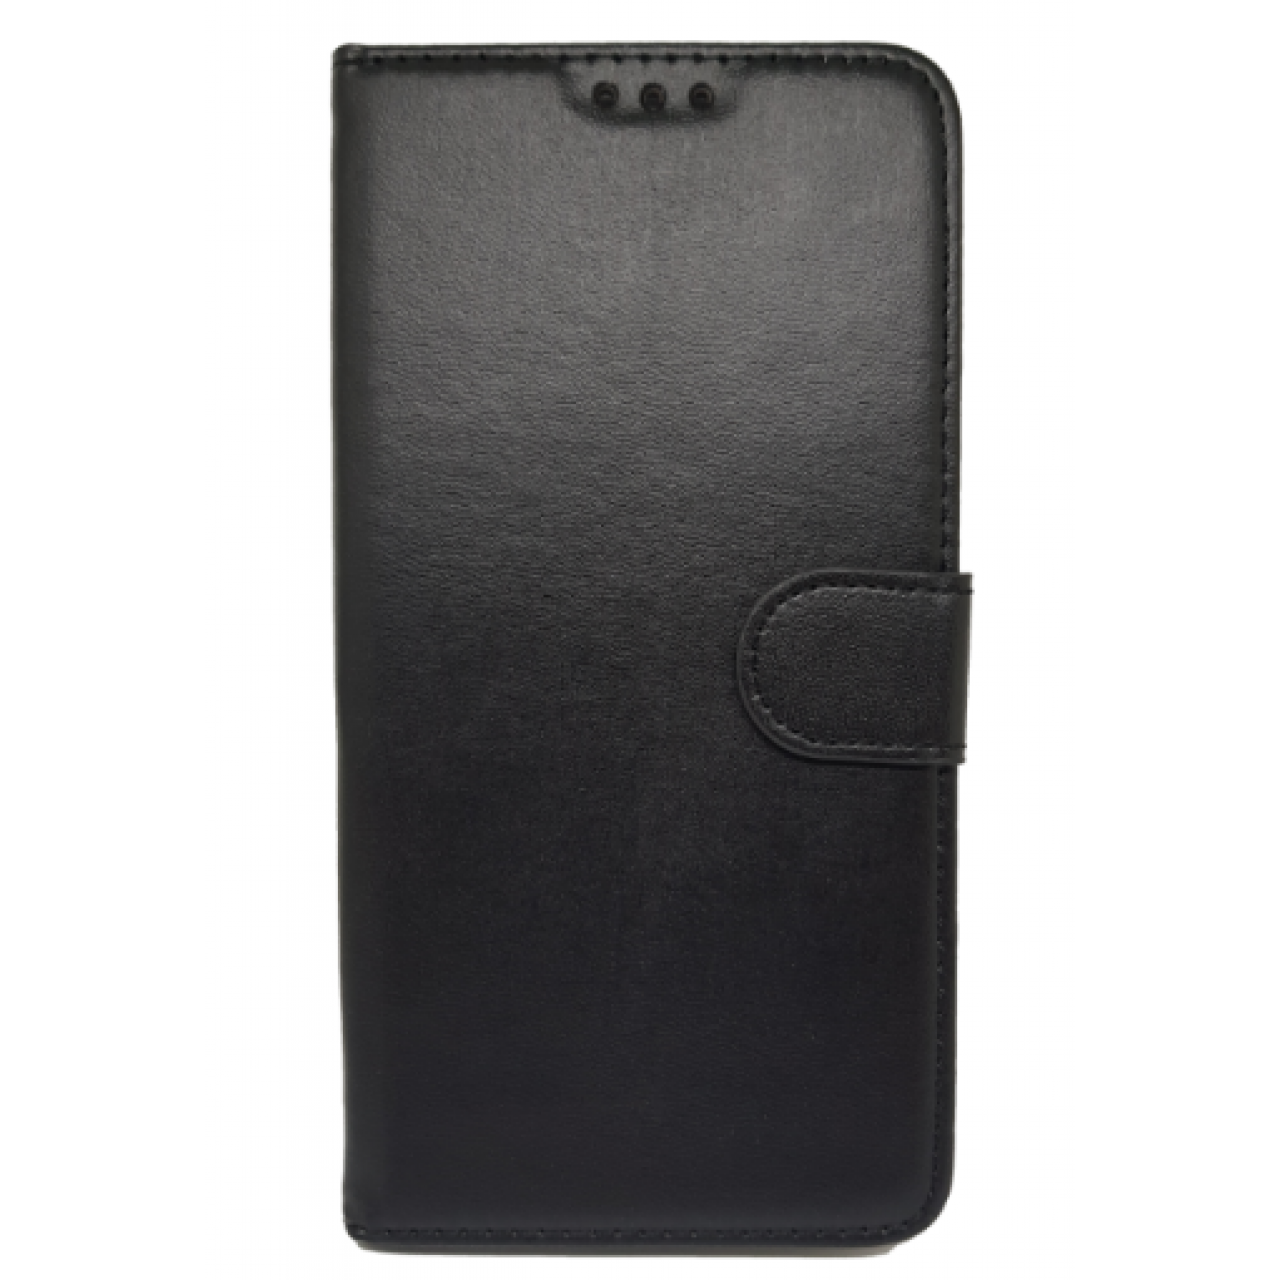 Θήκη Huawei P20 Pro PU Leather Πορτοφόλι - 3994 - Μαύρο - OEM